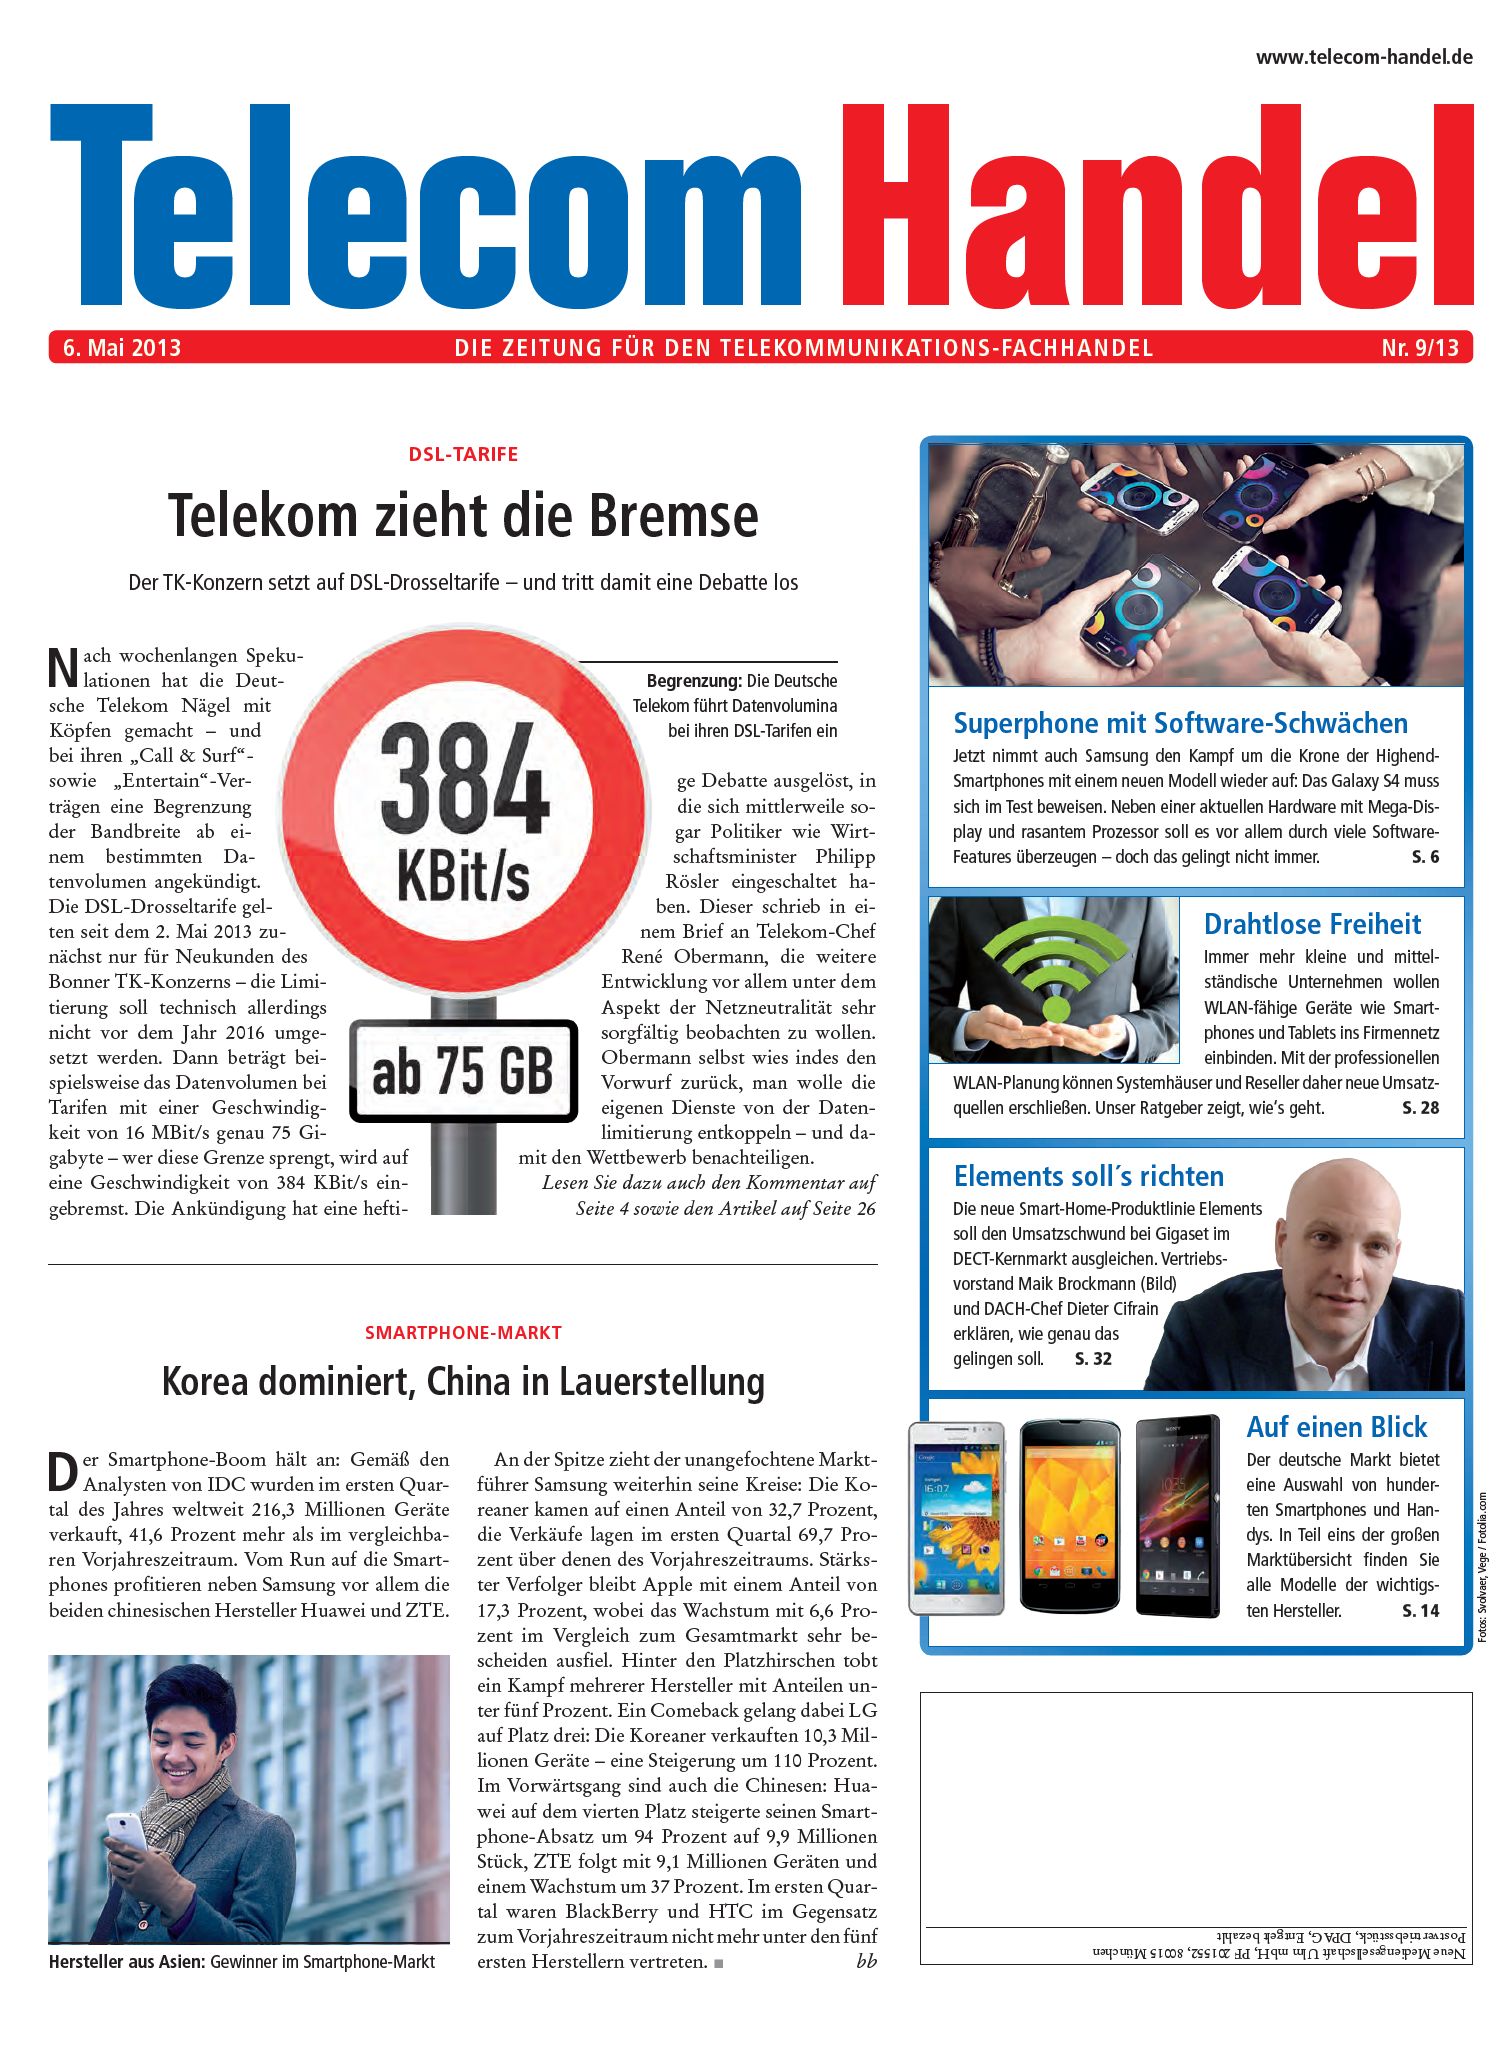 Telecom Handel Ausgabe 09/2013